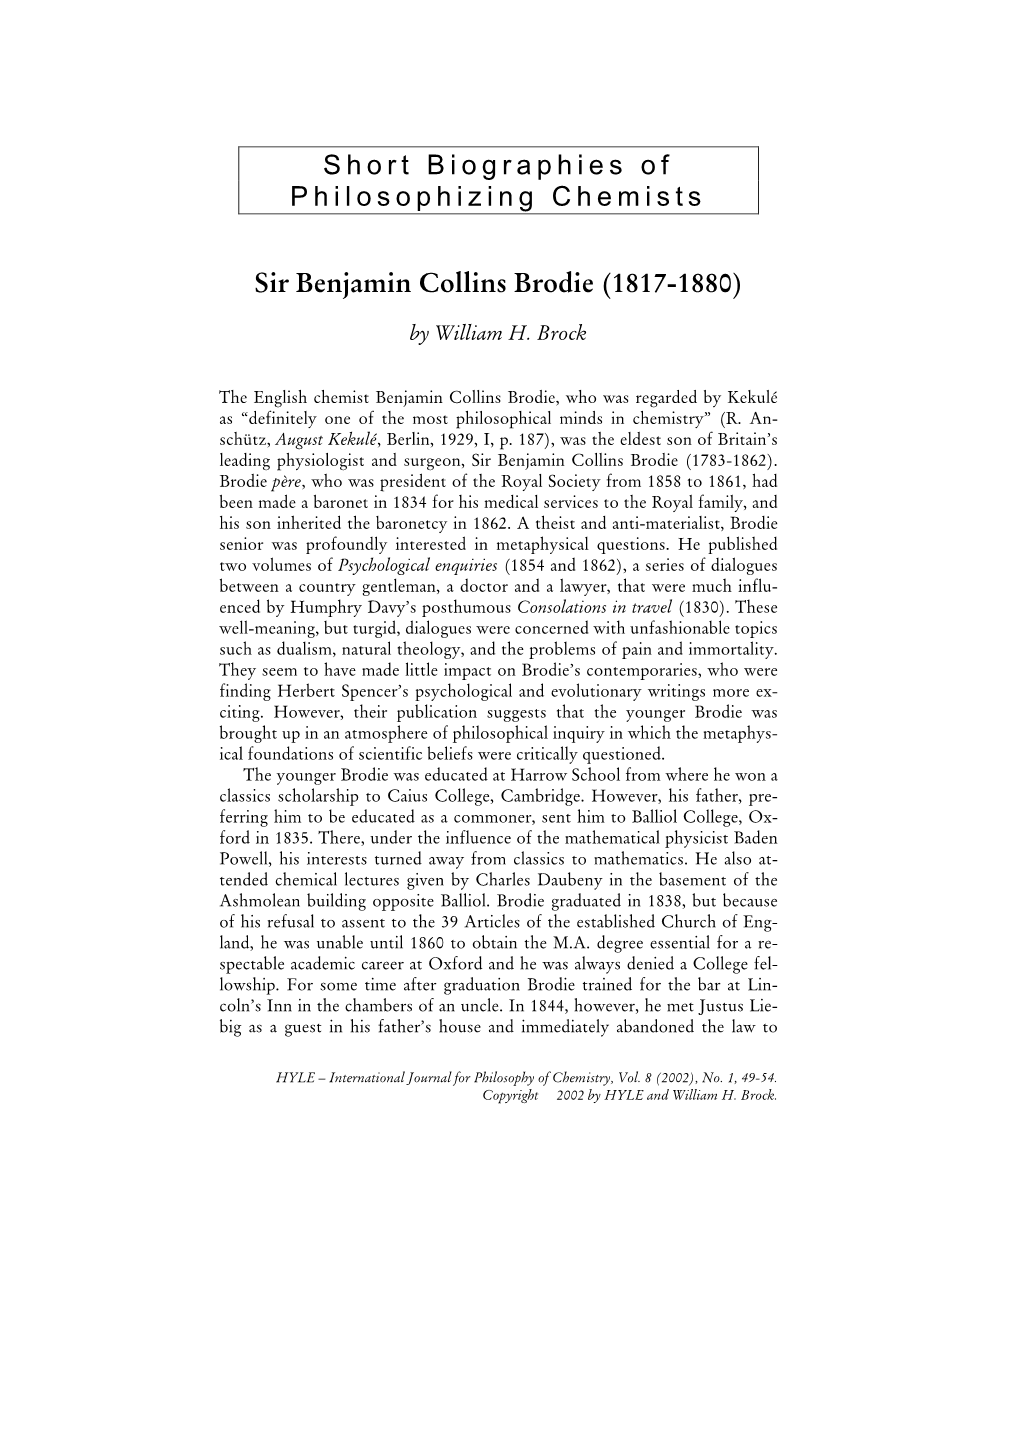 Biography of Sir Benjamin Collins Brodie